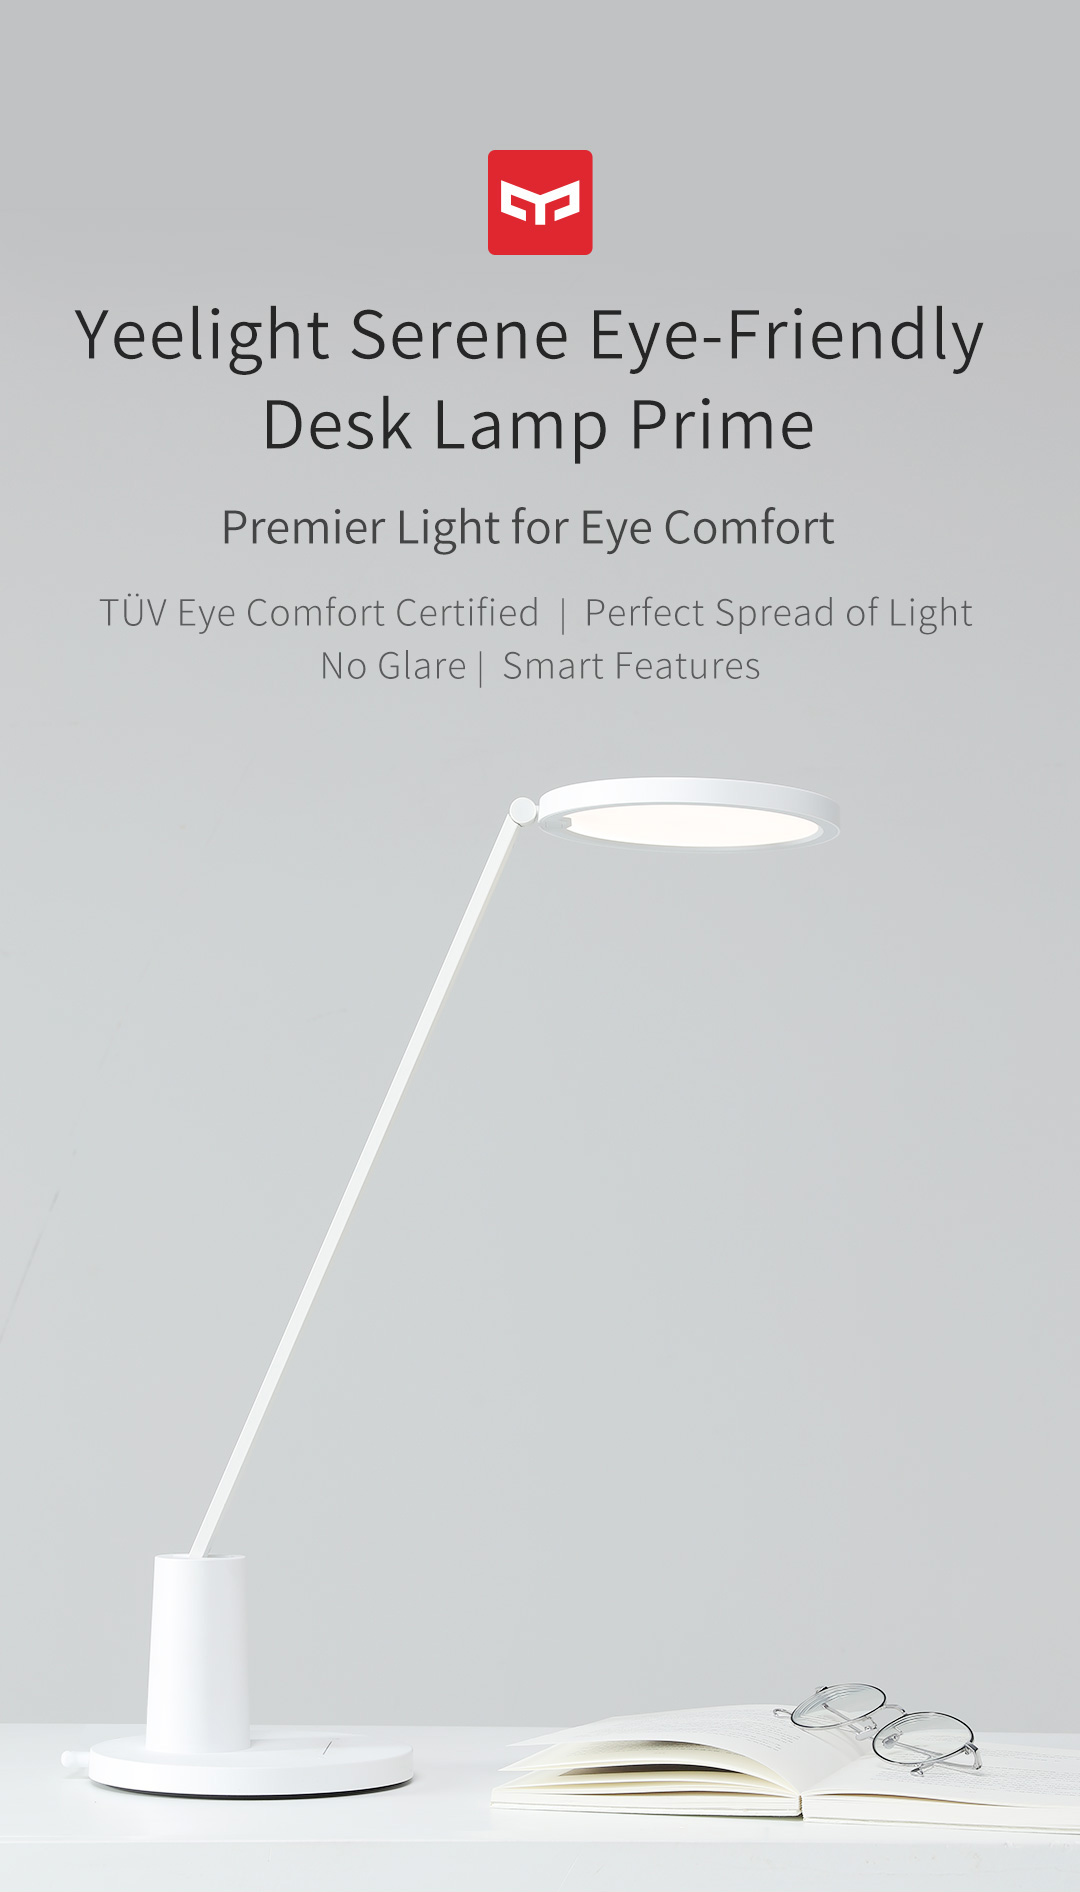 Serene Eye Friendly Desk Lamp Prime Yeelight Serene Eye Friendly